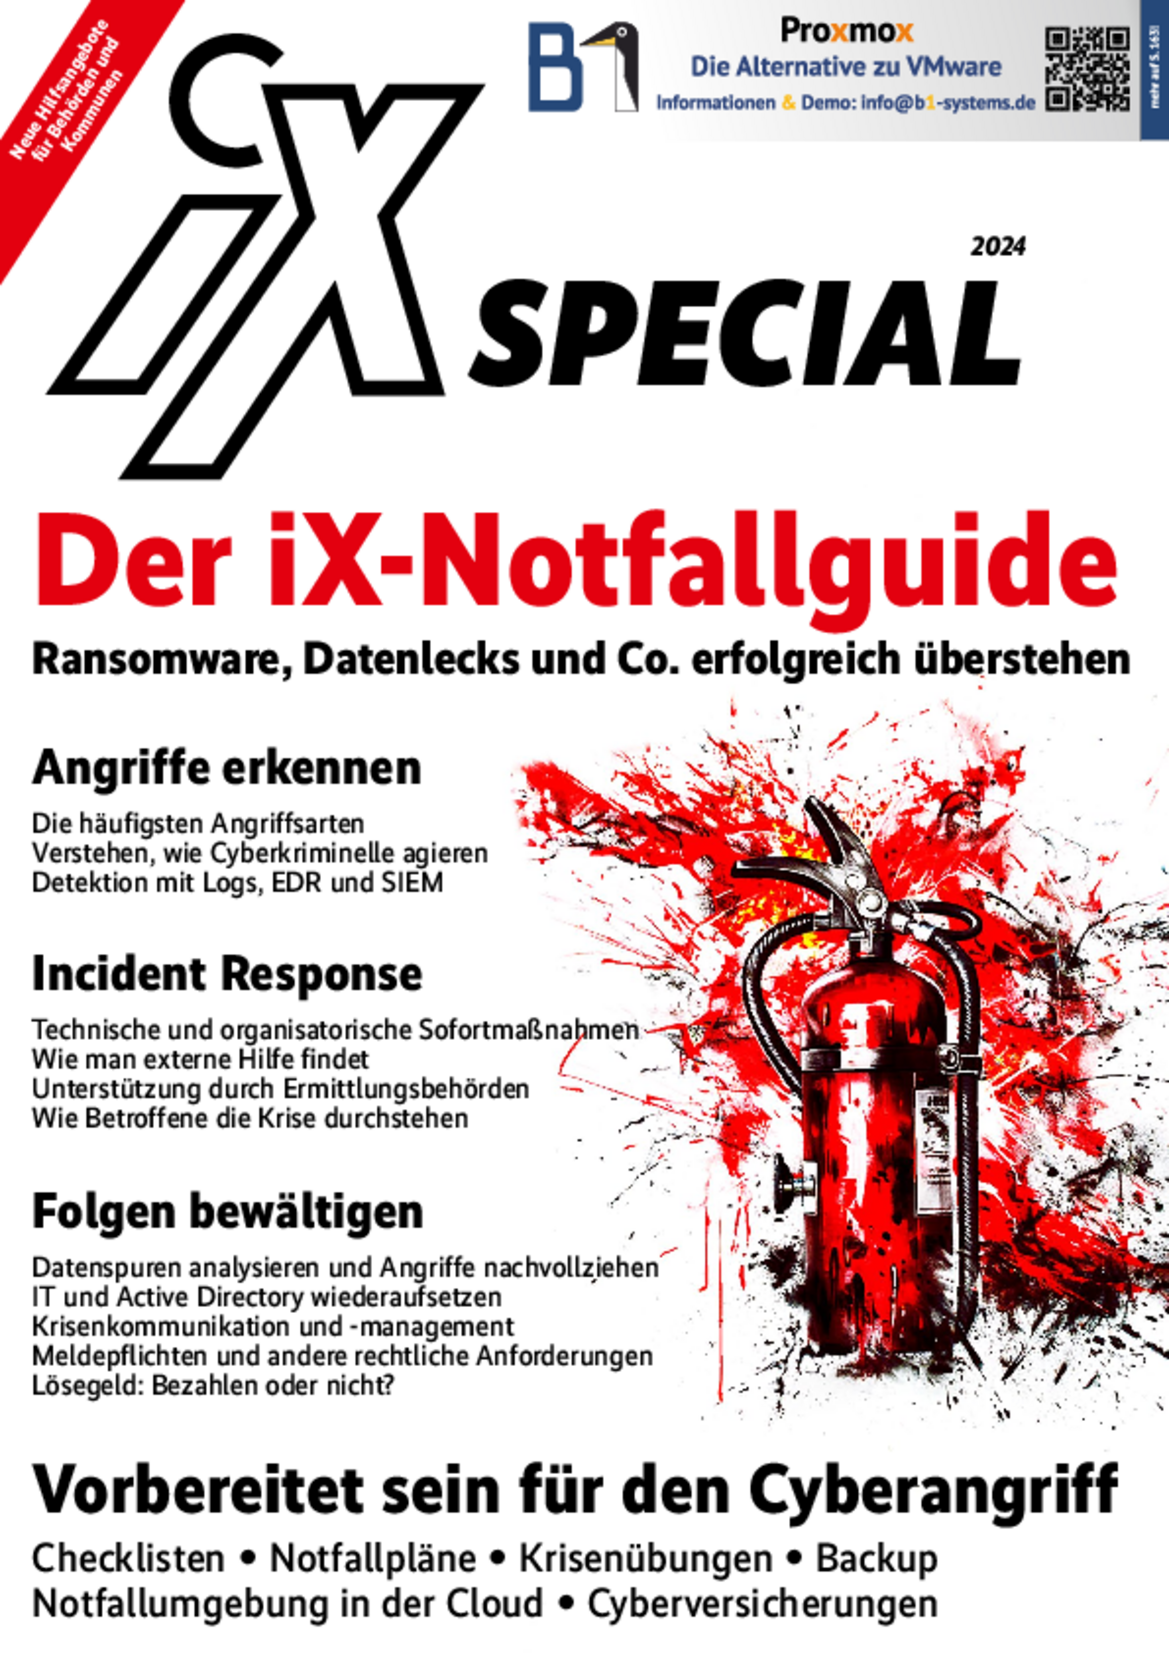 iX Special 2024 - Der iX-Notfallguide